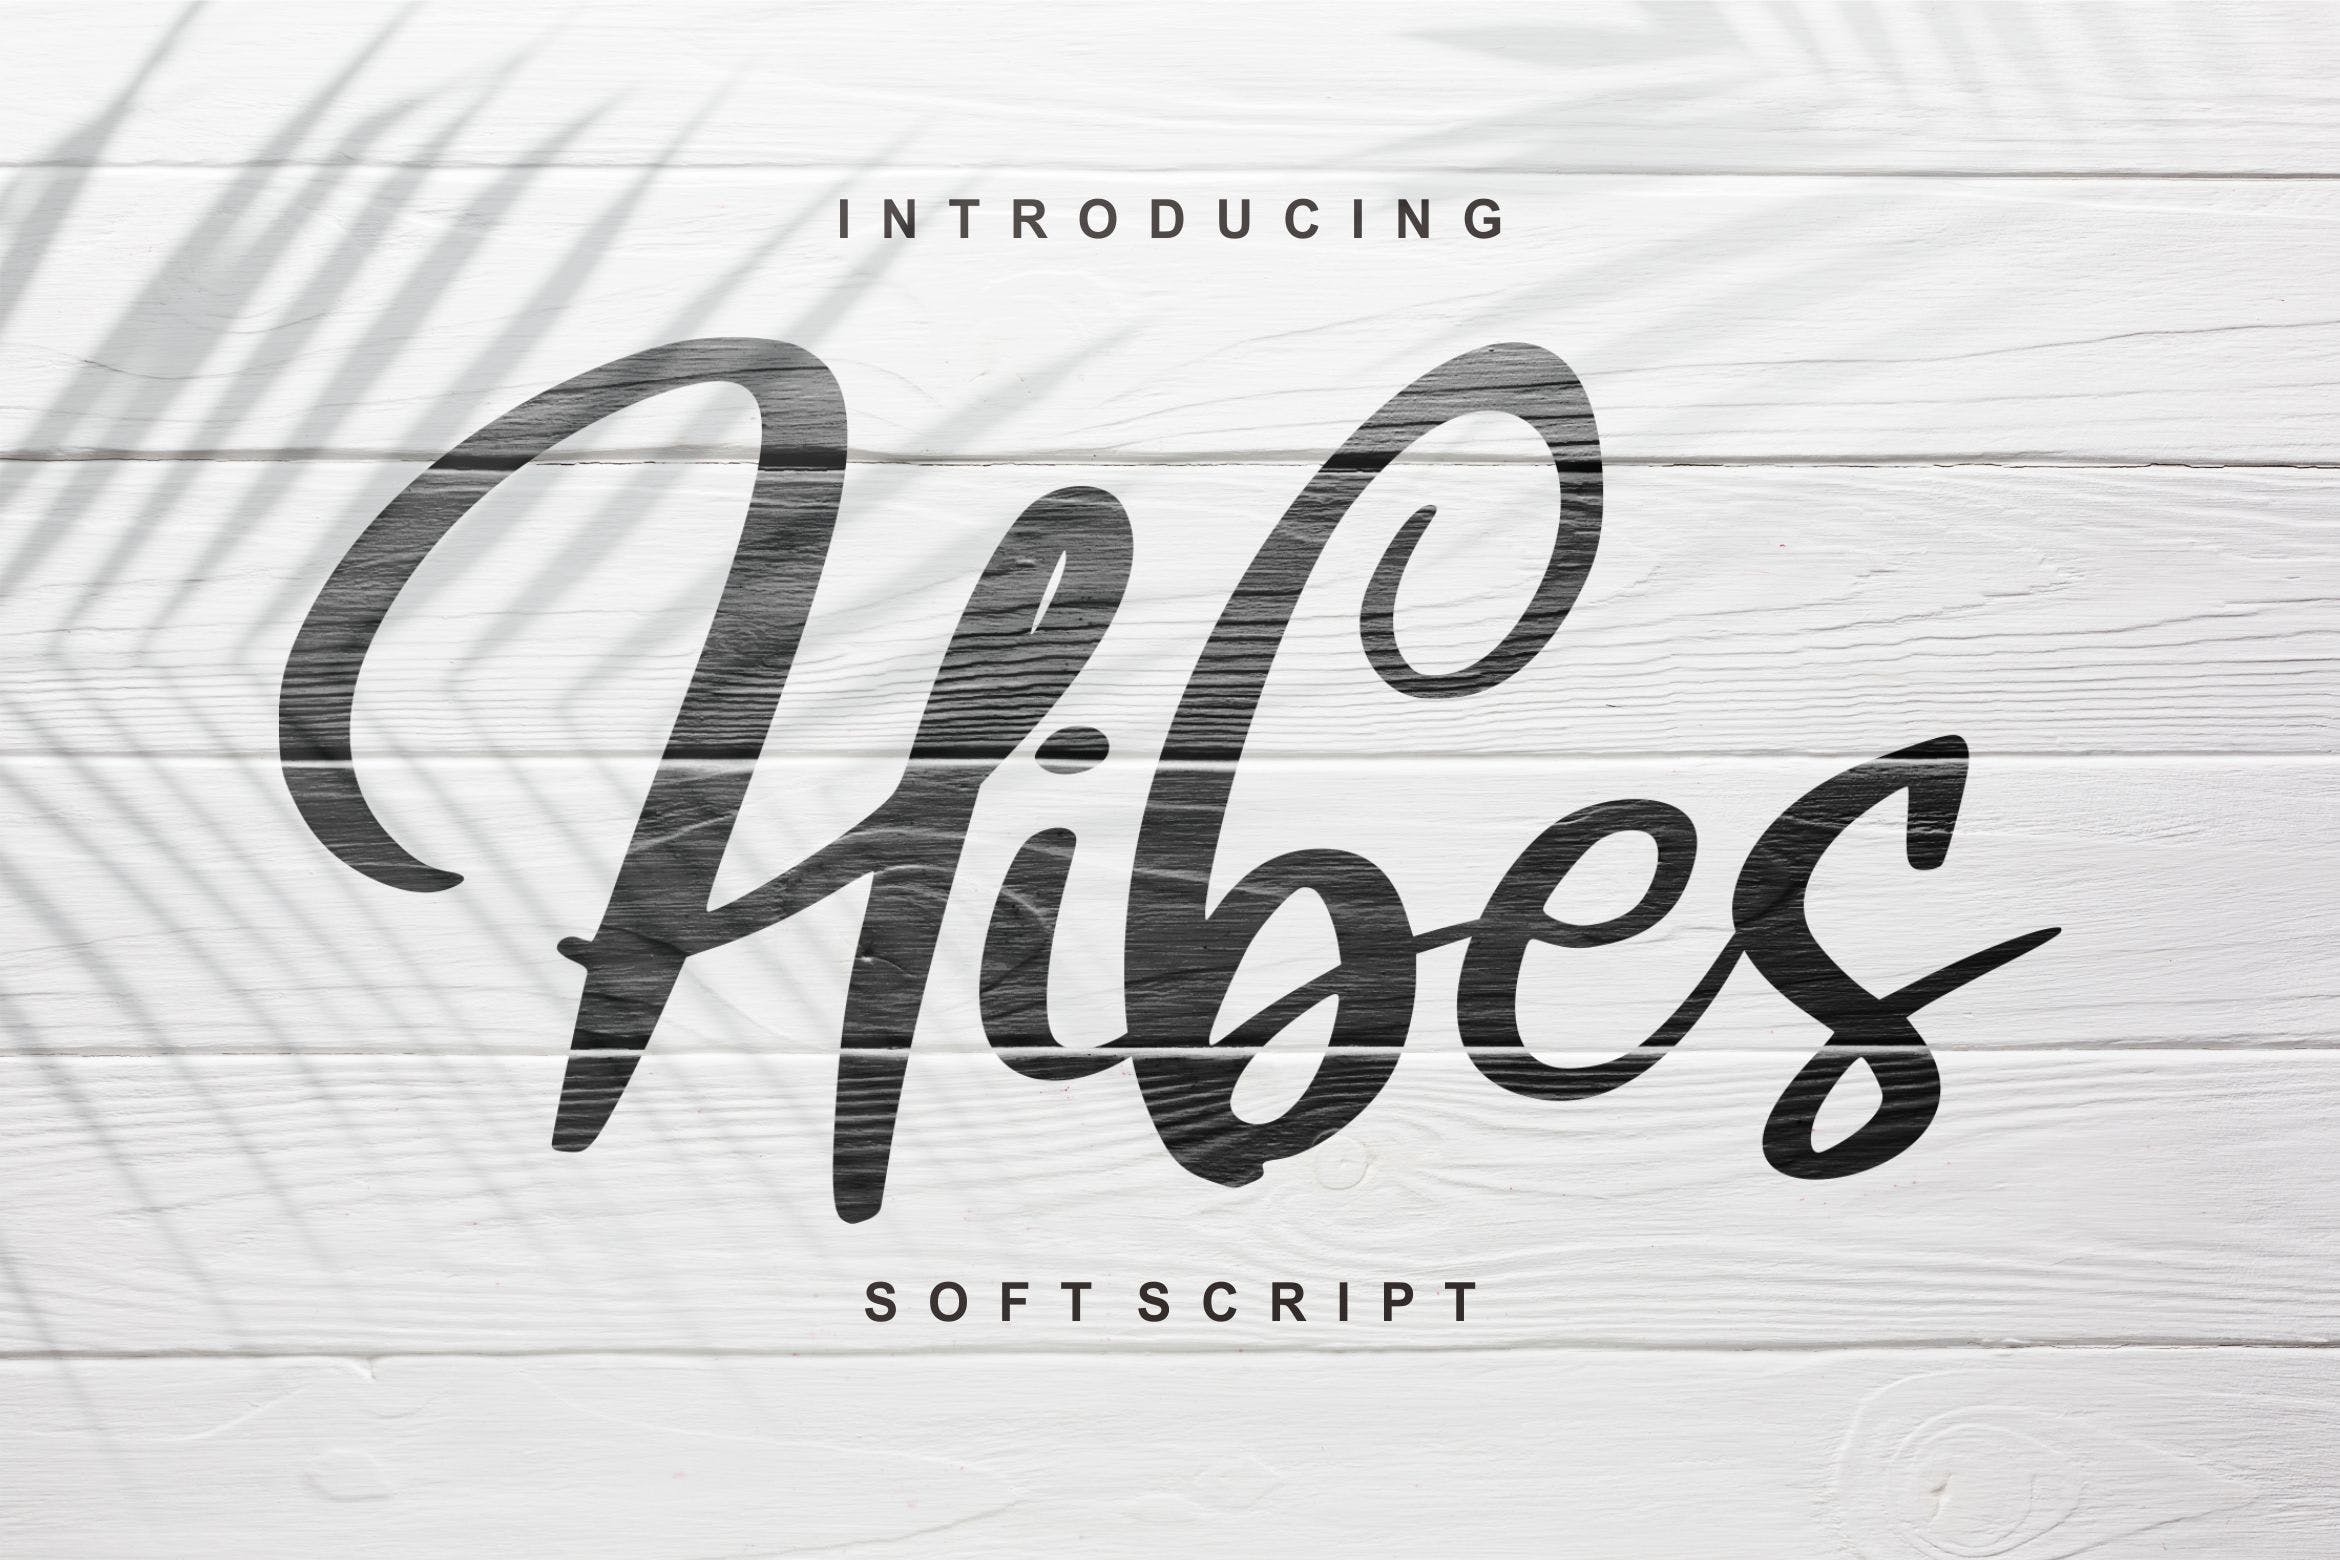 软笔刷书法风格英文手写字体蚂蚁素材精选 Hibes | Soft Script Font插图